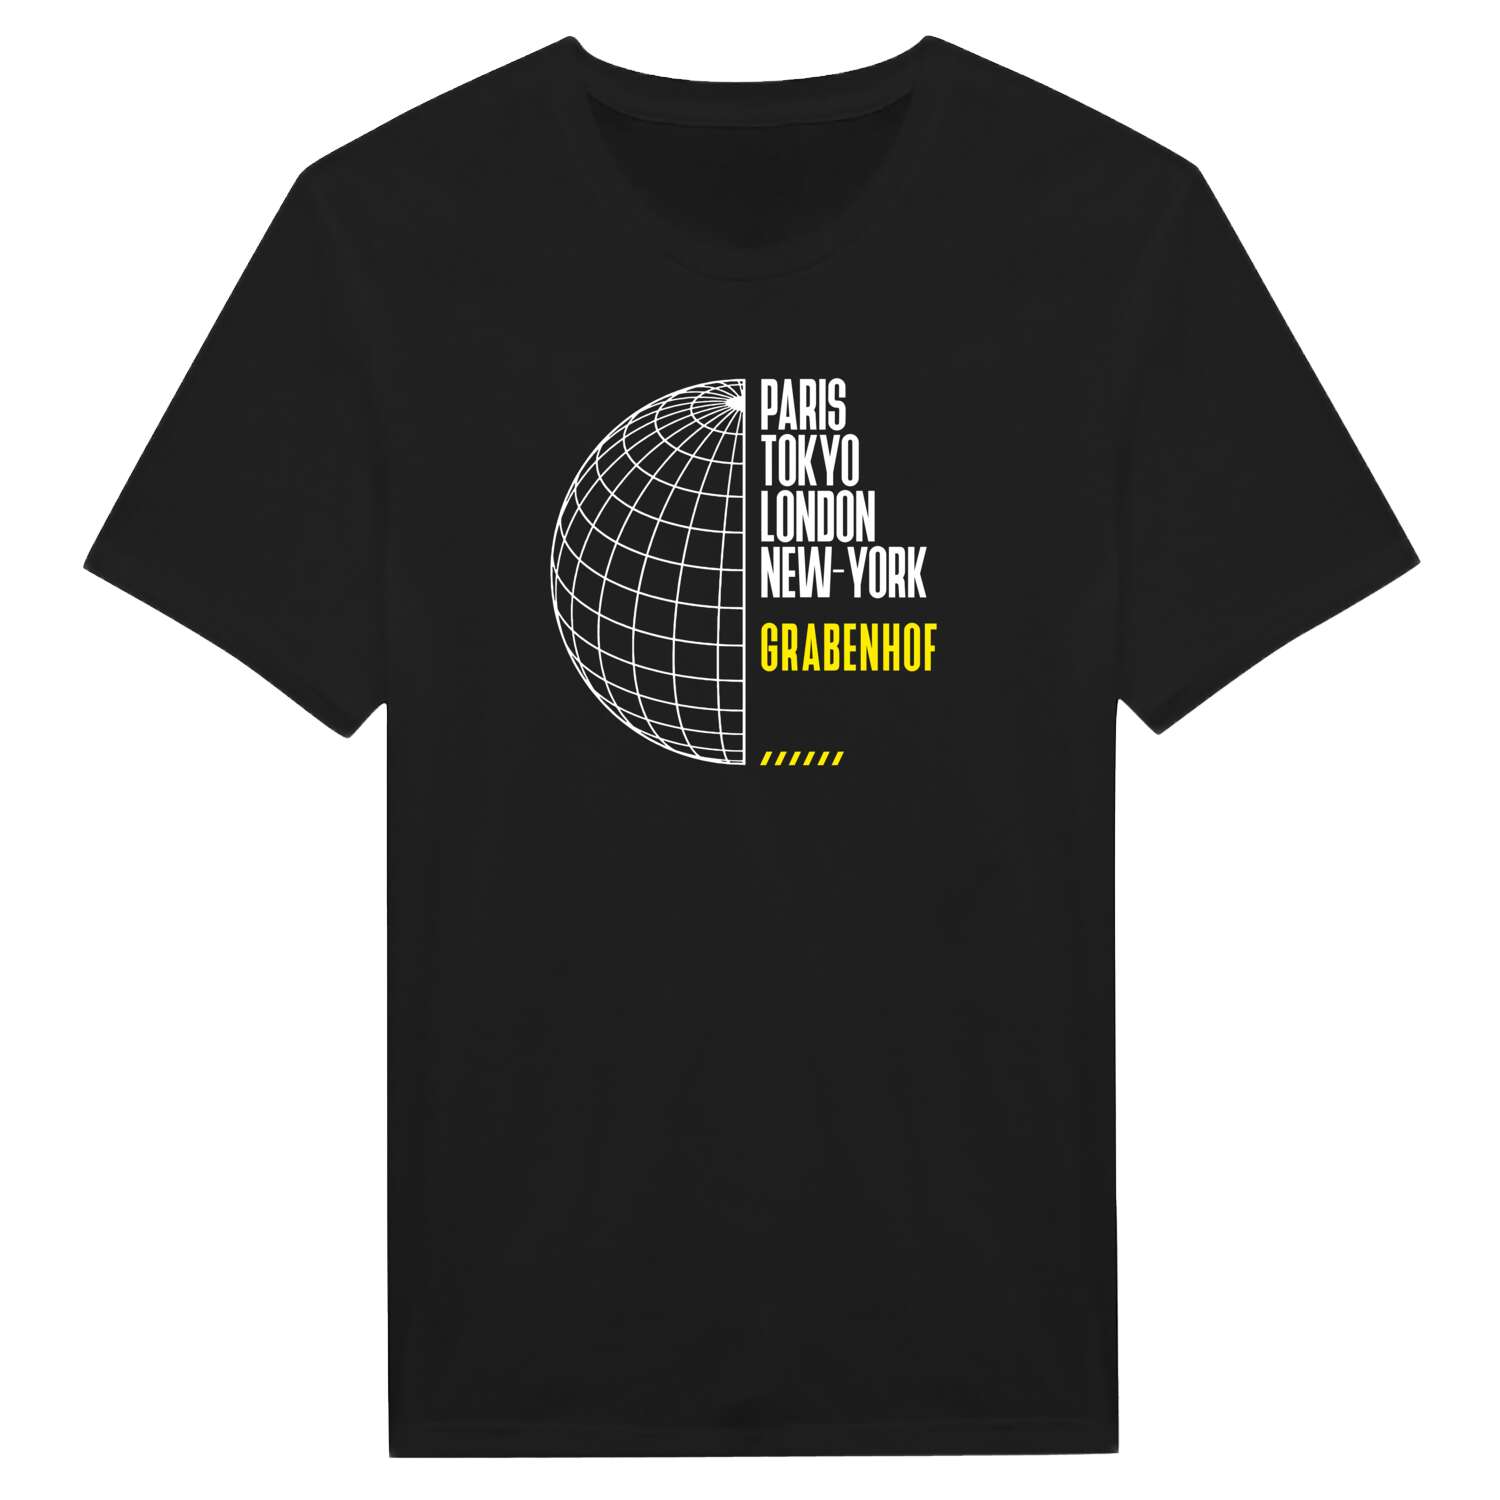 Grabenhof T-Shirt »Paris Tokyo London«